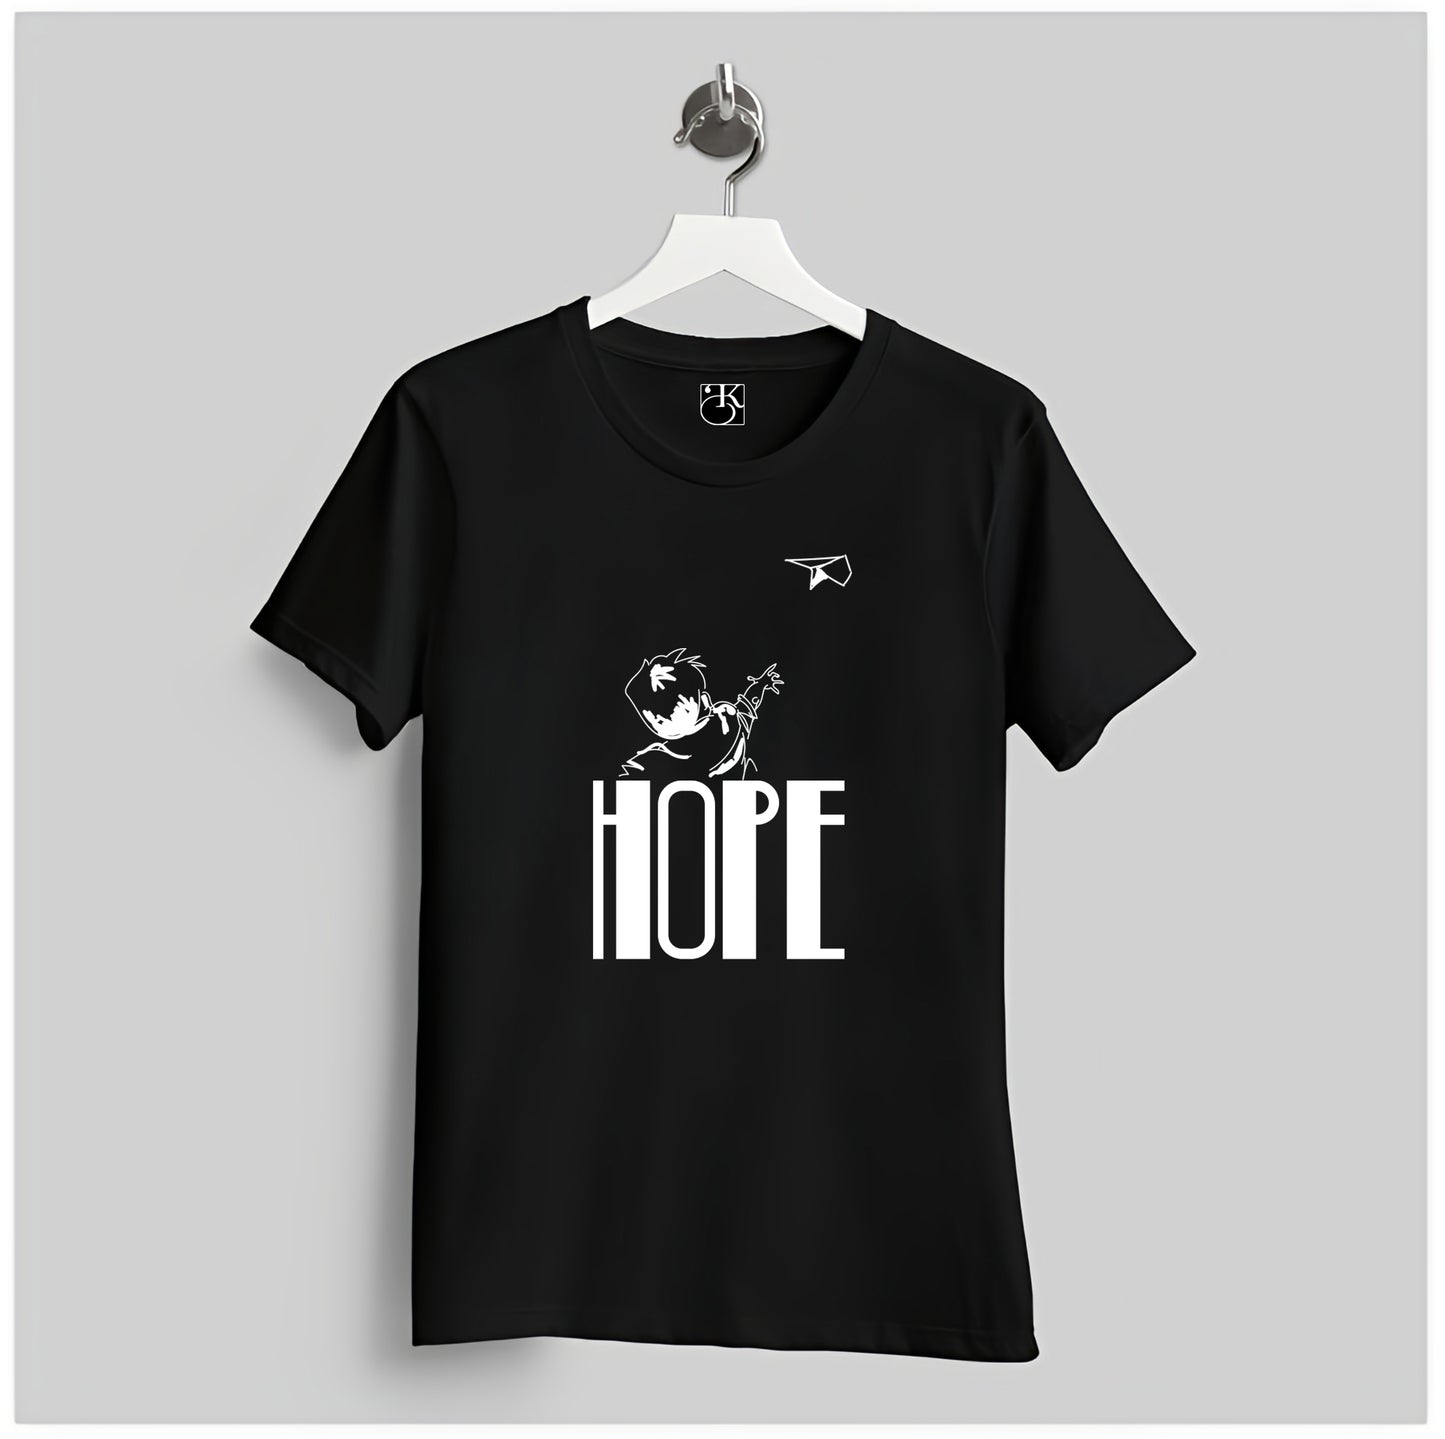 Hope T-Shirt By Kotha